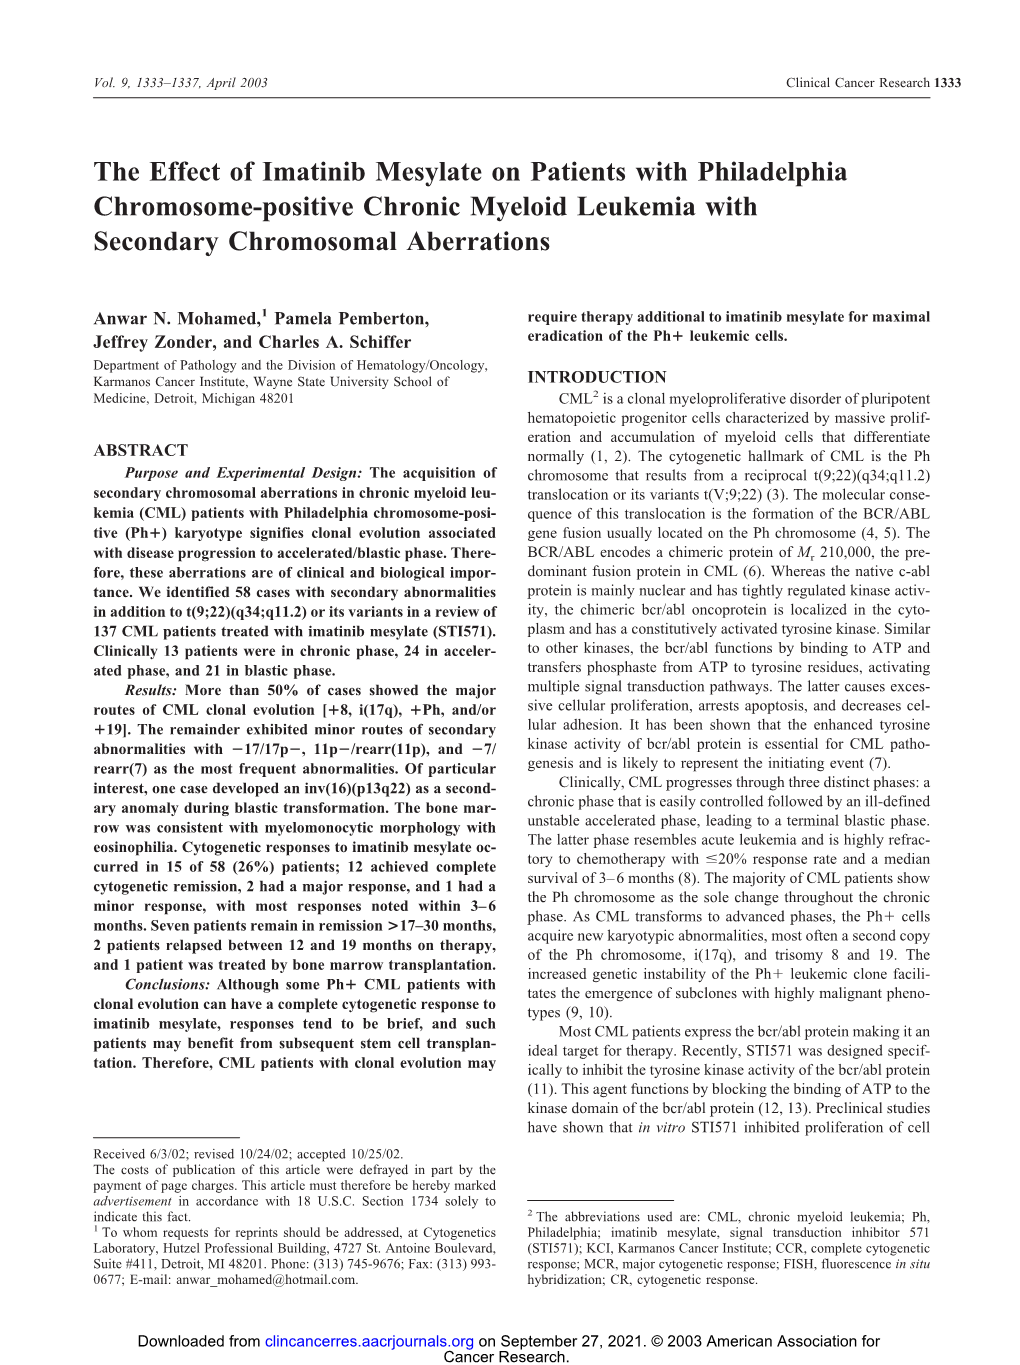 The Effect of Imatinib Mesylate on Patients with Philadelphia Chromosome-Positive Chronic Myeloid Leukemia with Secondary Chromosomal Aberrations